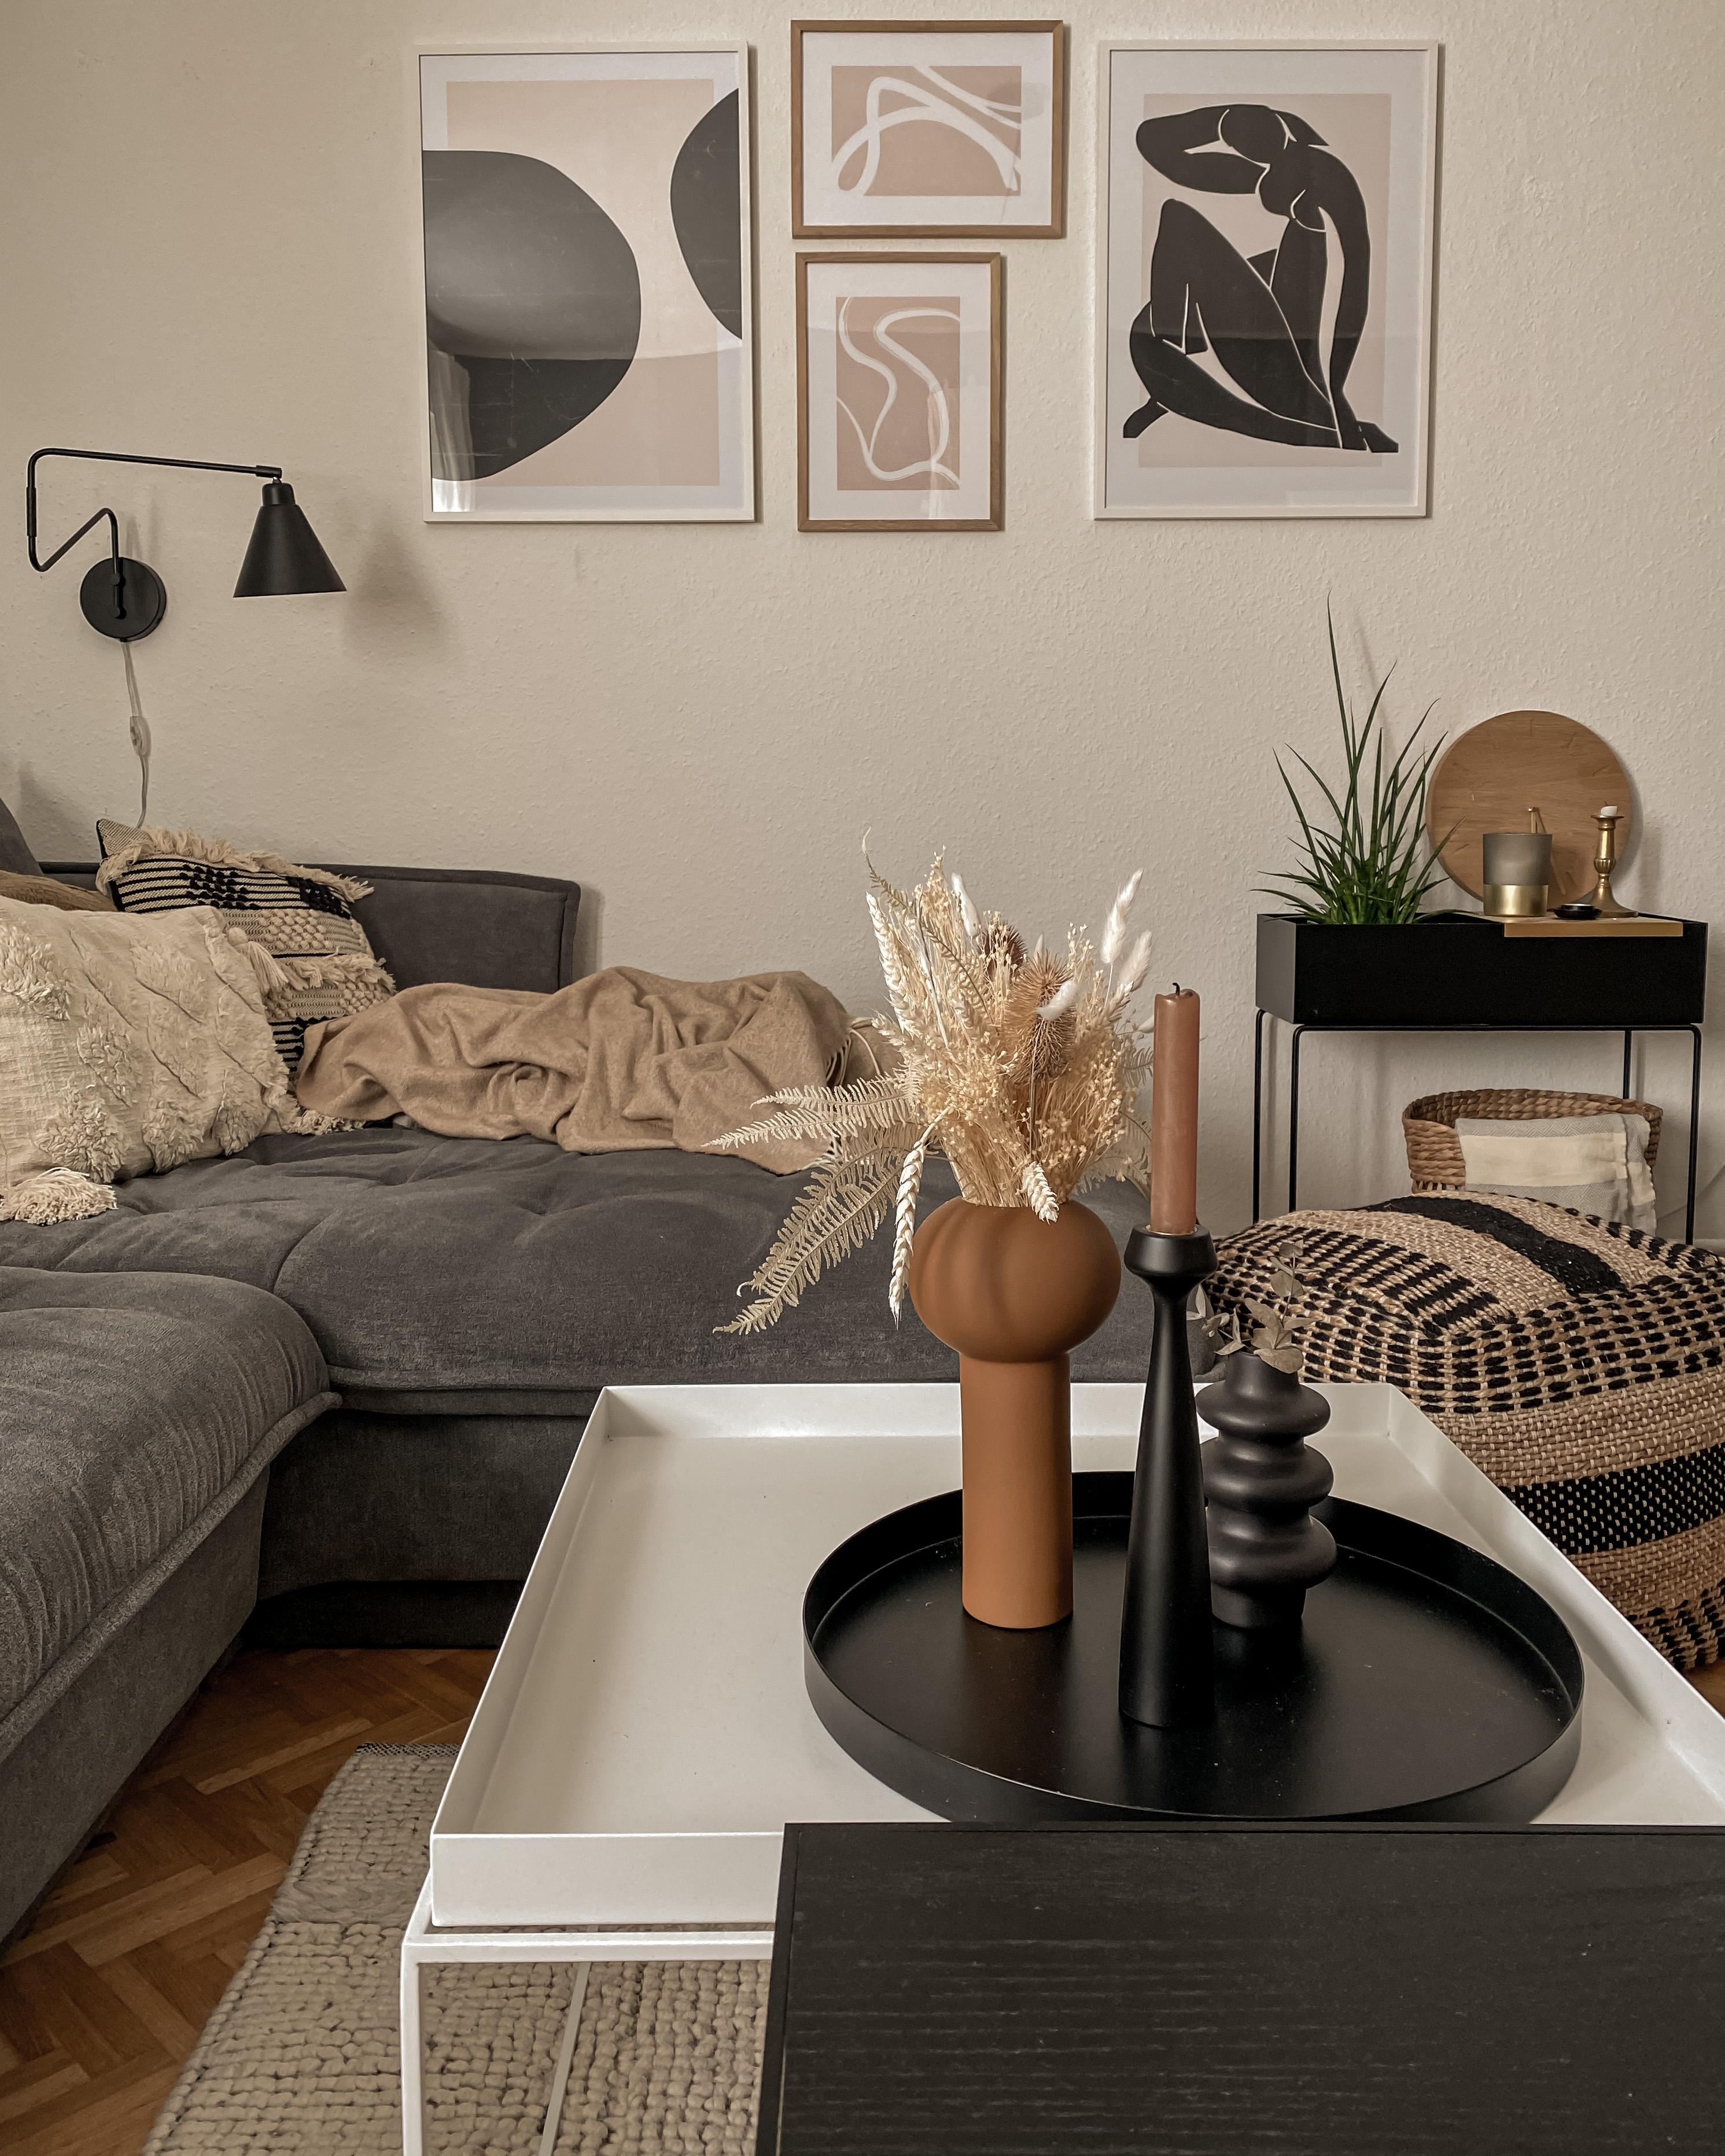 NEW GALLERY WALL✨ #bilderwand #bildergalerie #prints #plantbox #couch #couchtisch #wohnzimmer #livingroom #tischdeko